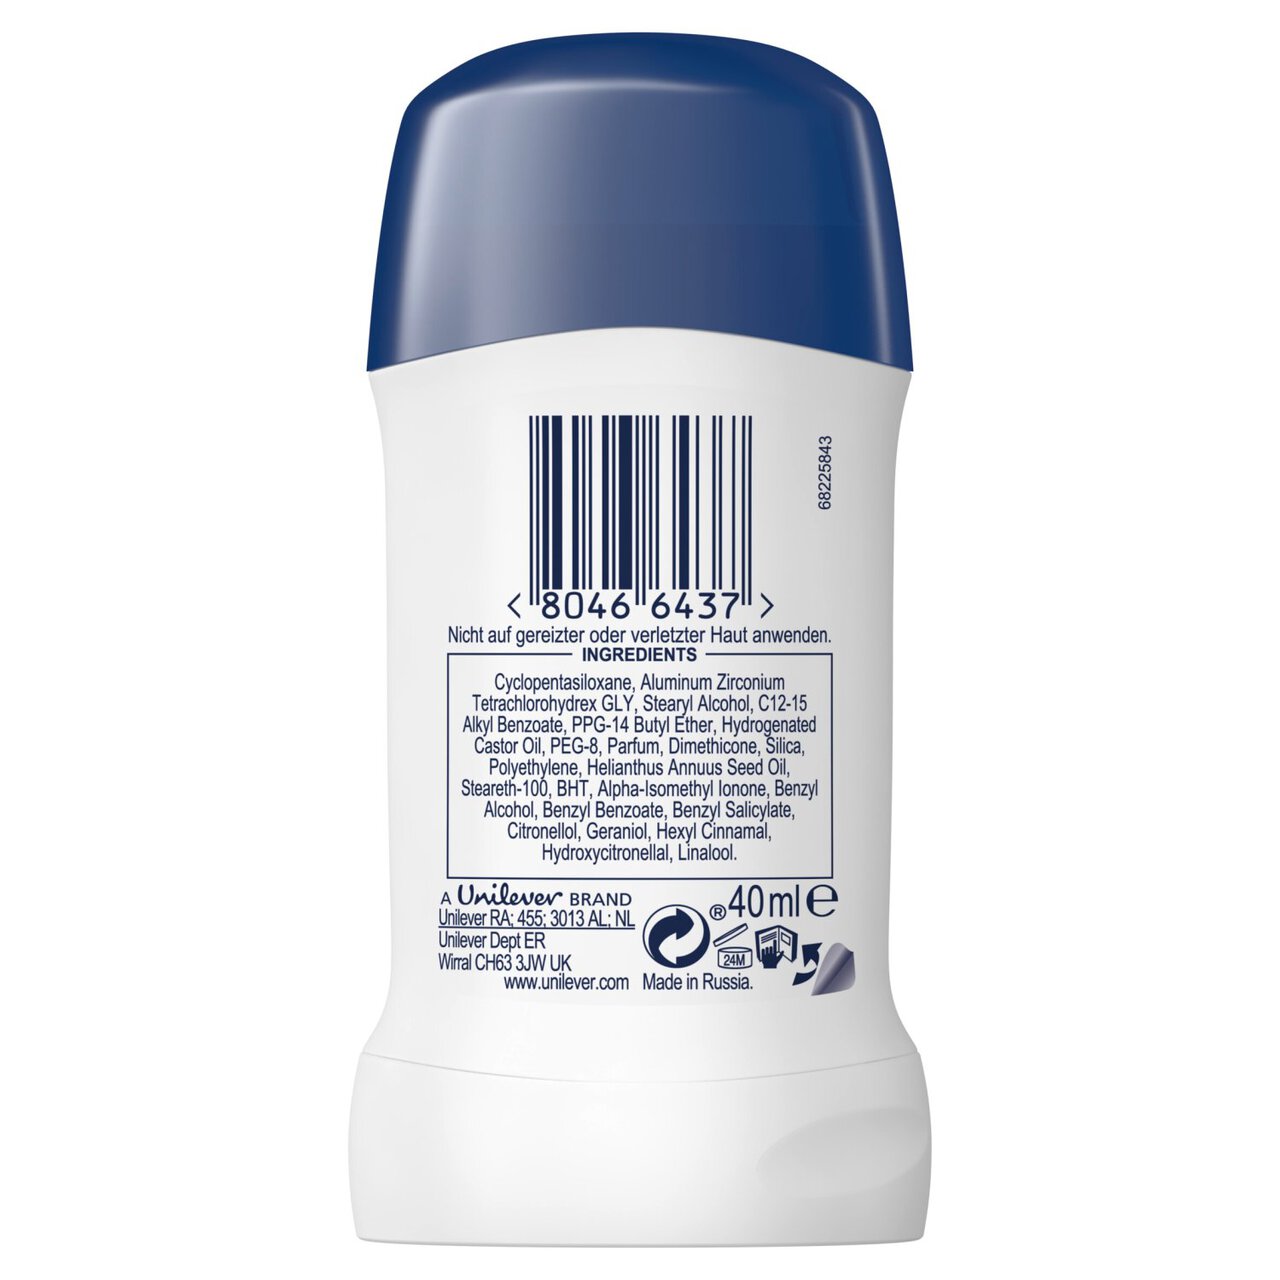 Dove Original Stick Anti-Perspirant Deodorant 40ml